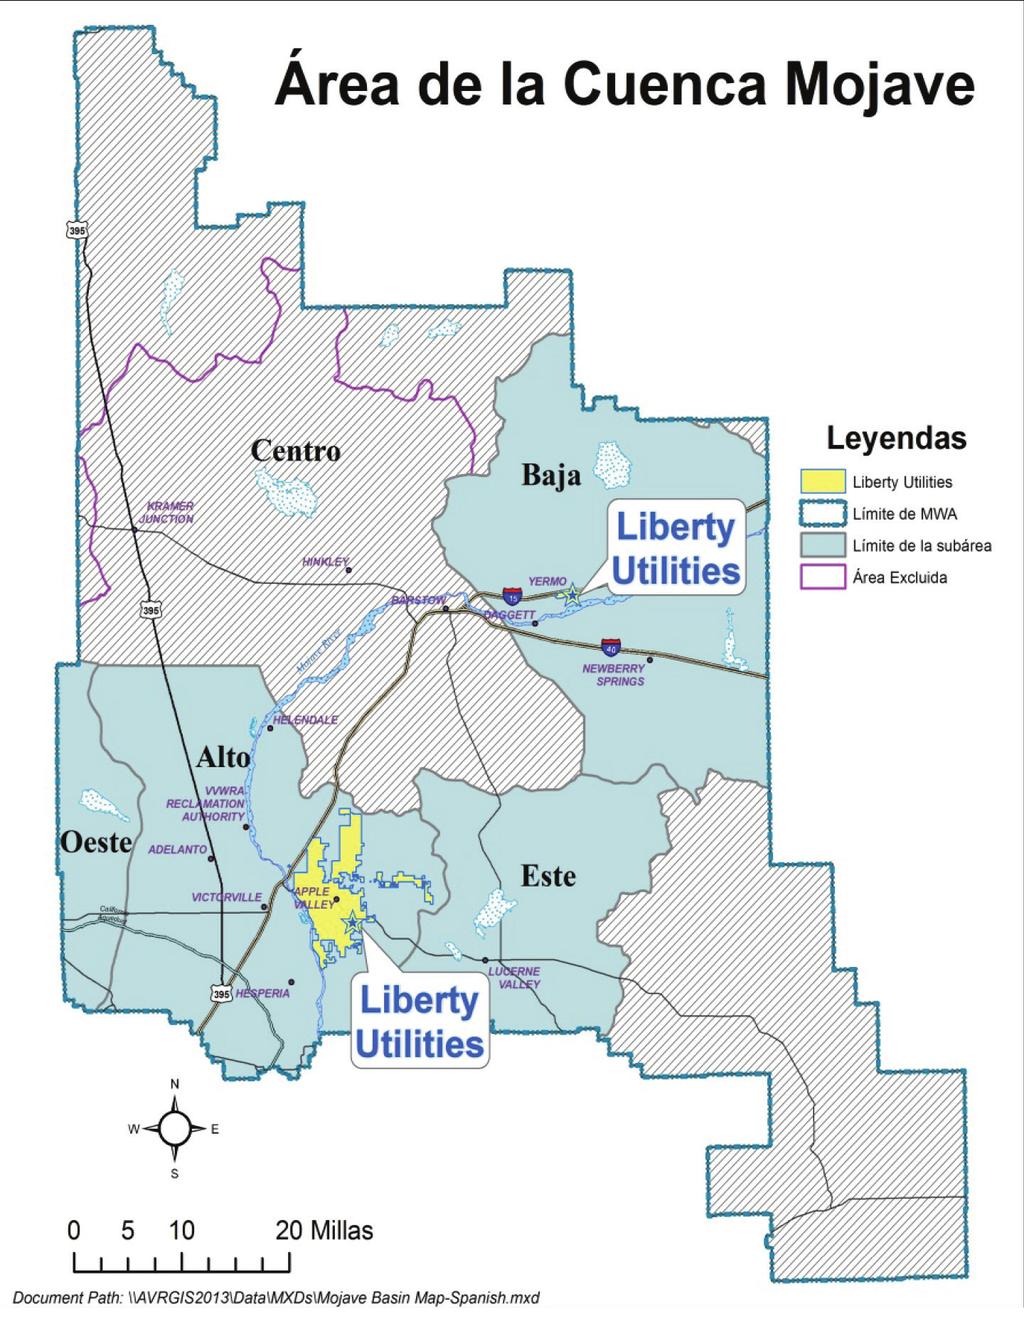 FUENTES DE LIBERTY UTILITIES YERMO Liberty Utilities Yermo bombea el 100% de nuestra fuente de agua de 2 pozos ubicados en la comunidad: pozo Marine 1, que suministra la porción Este del sistema y el